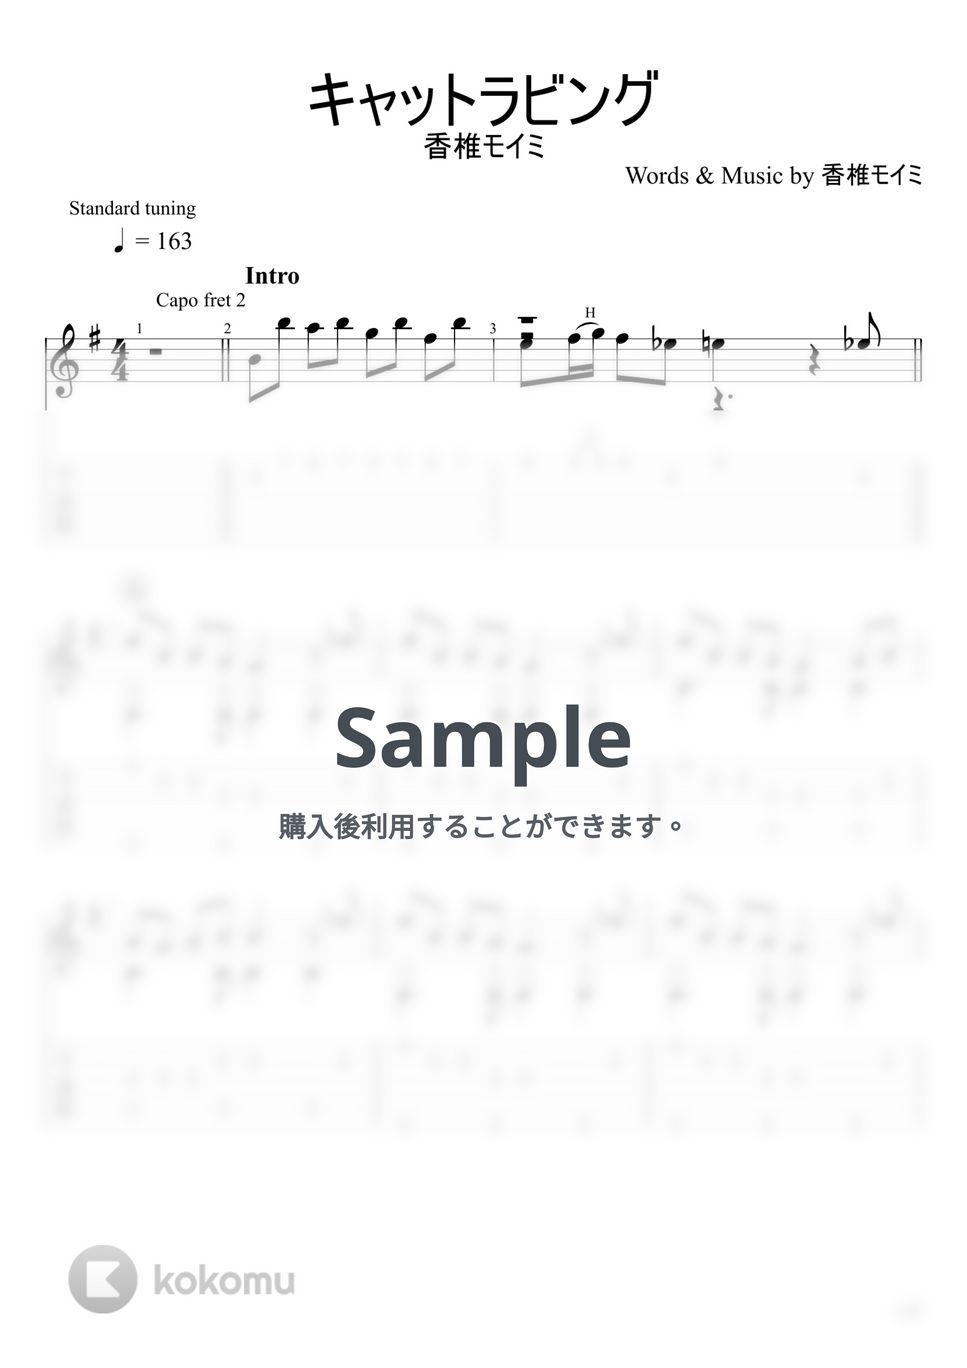 香椎モイミ - キャットラビング (ソロギター) by u3danchou